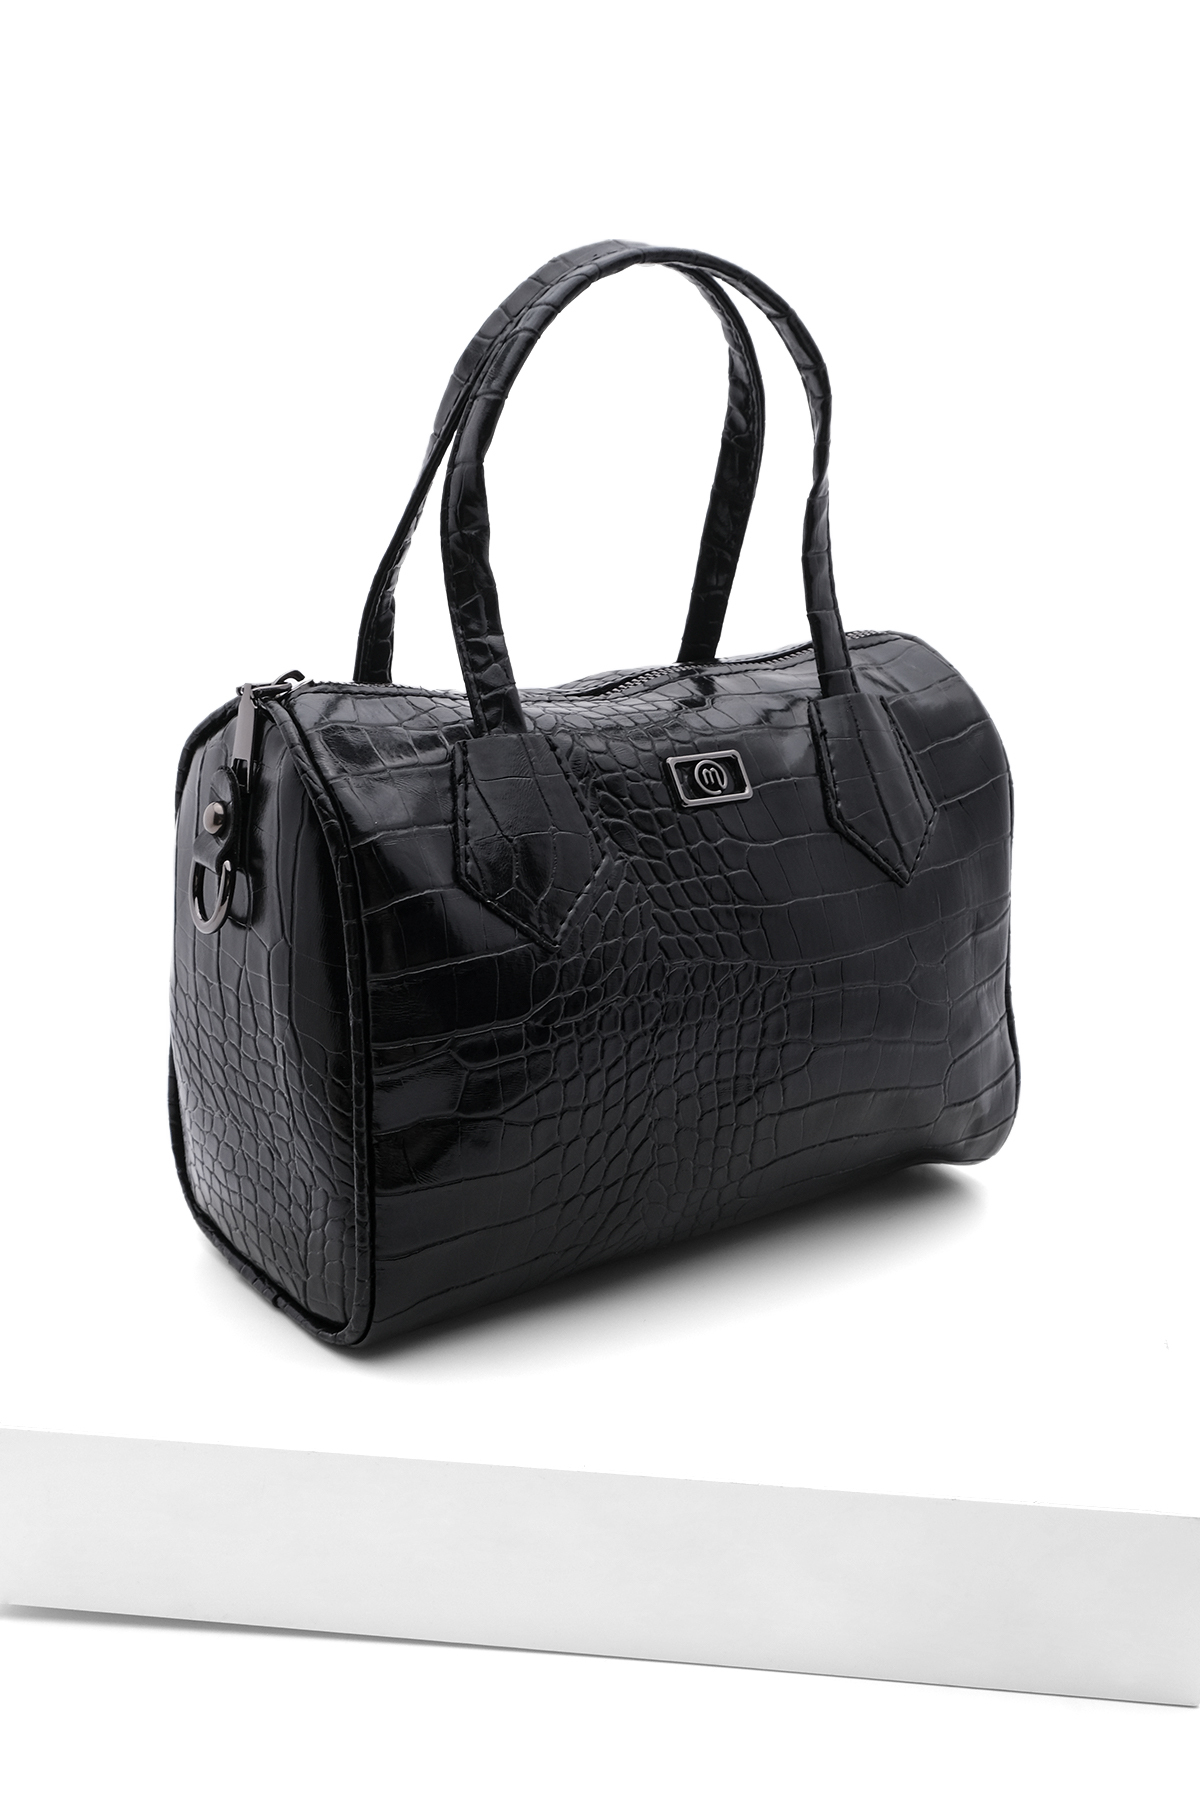 Marjin Women's Adjustable Strap Hand Shoulder Bag Celiza Black Croco